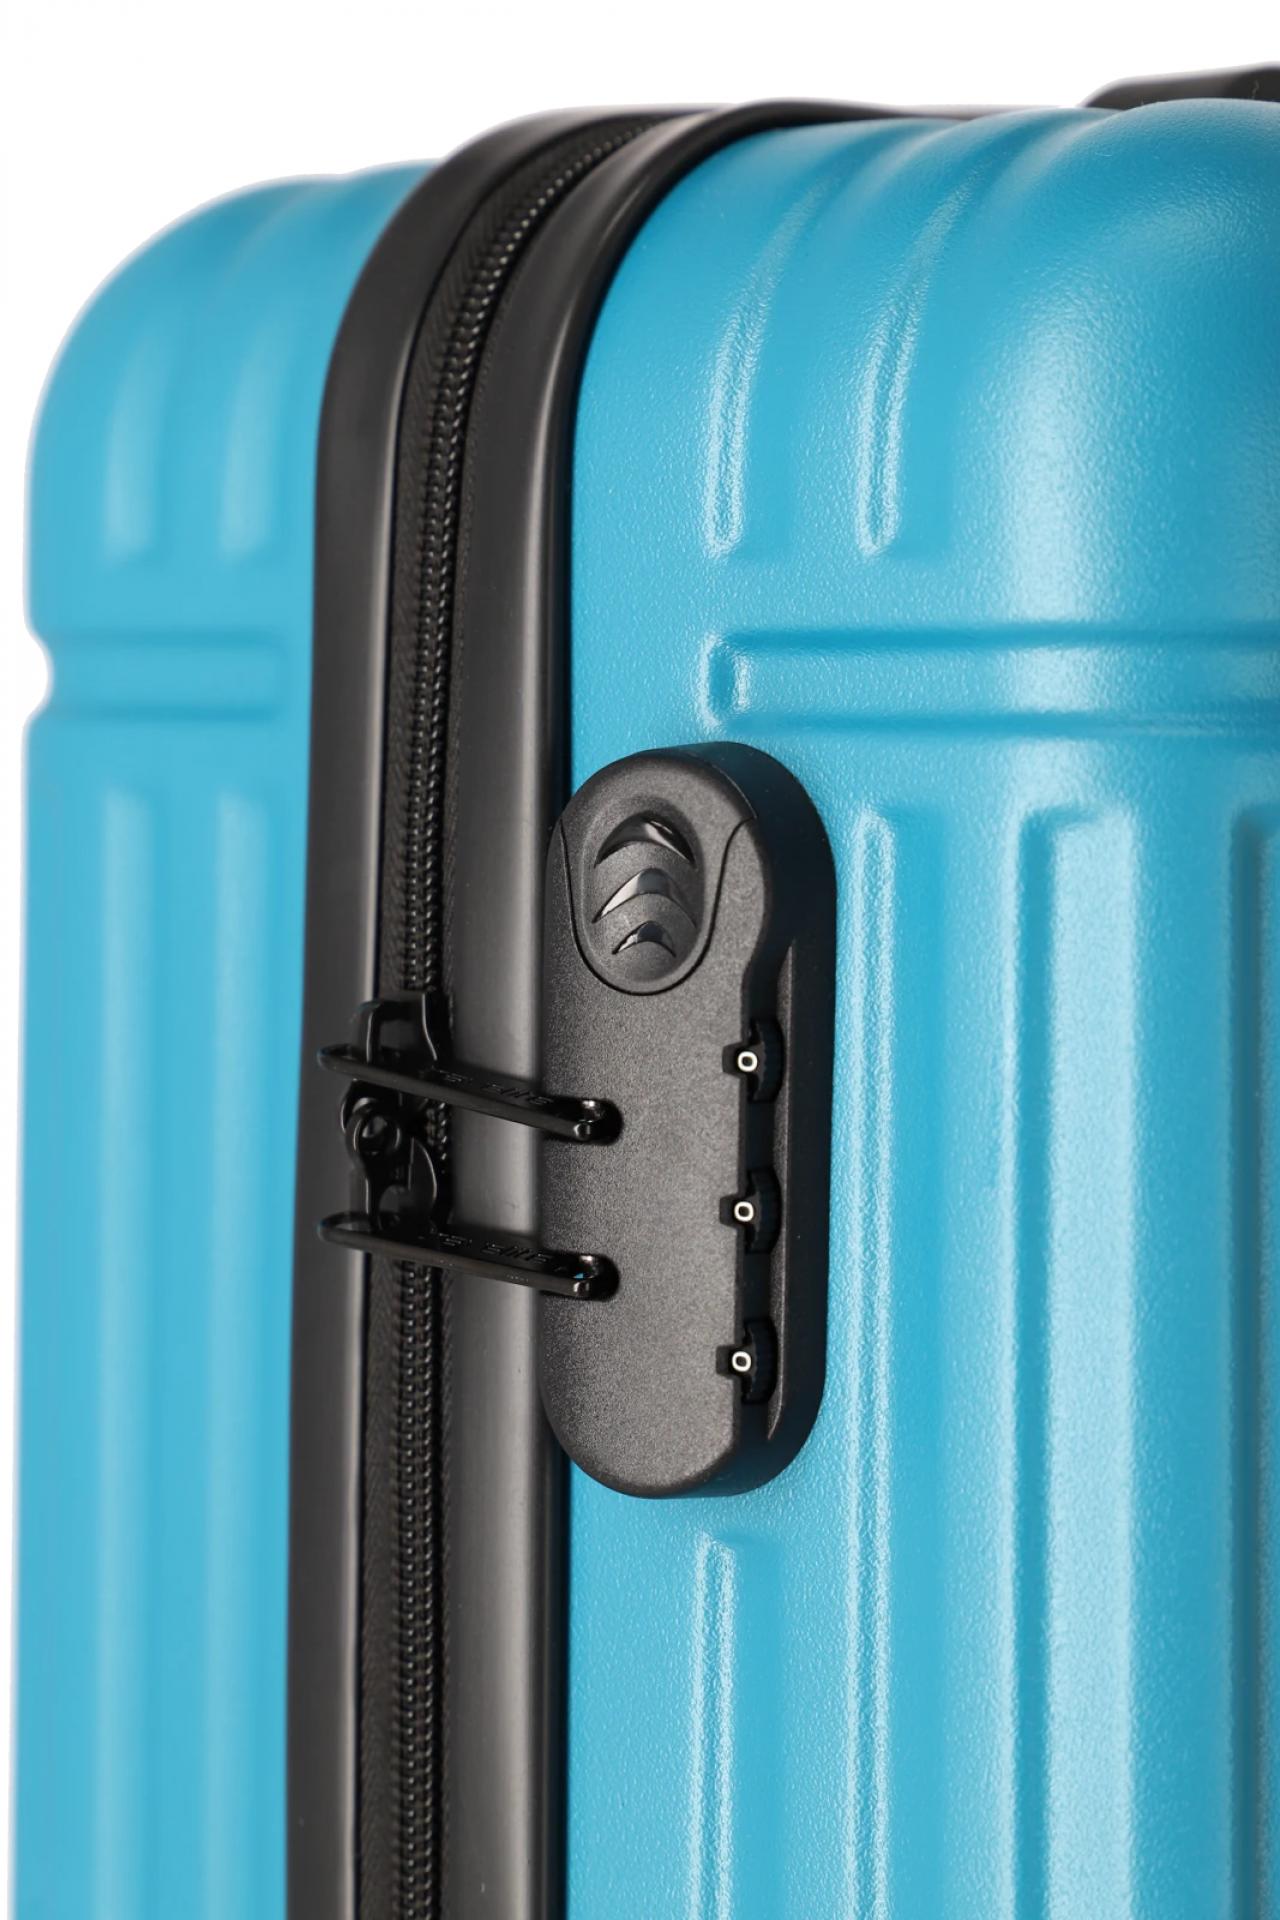 Travelite CRUISE Koffer ABS-Hartschale Türkis - Größe: XS